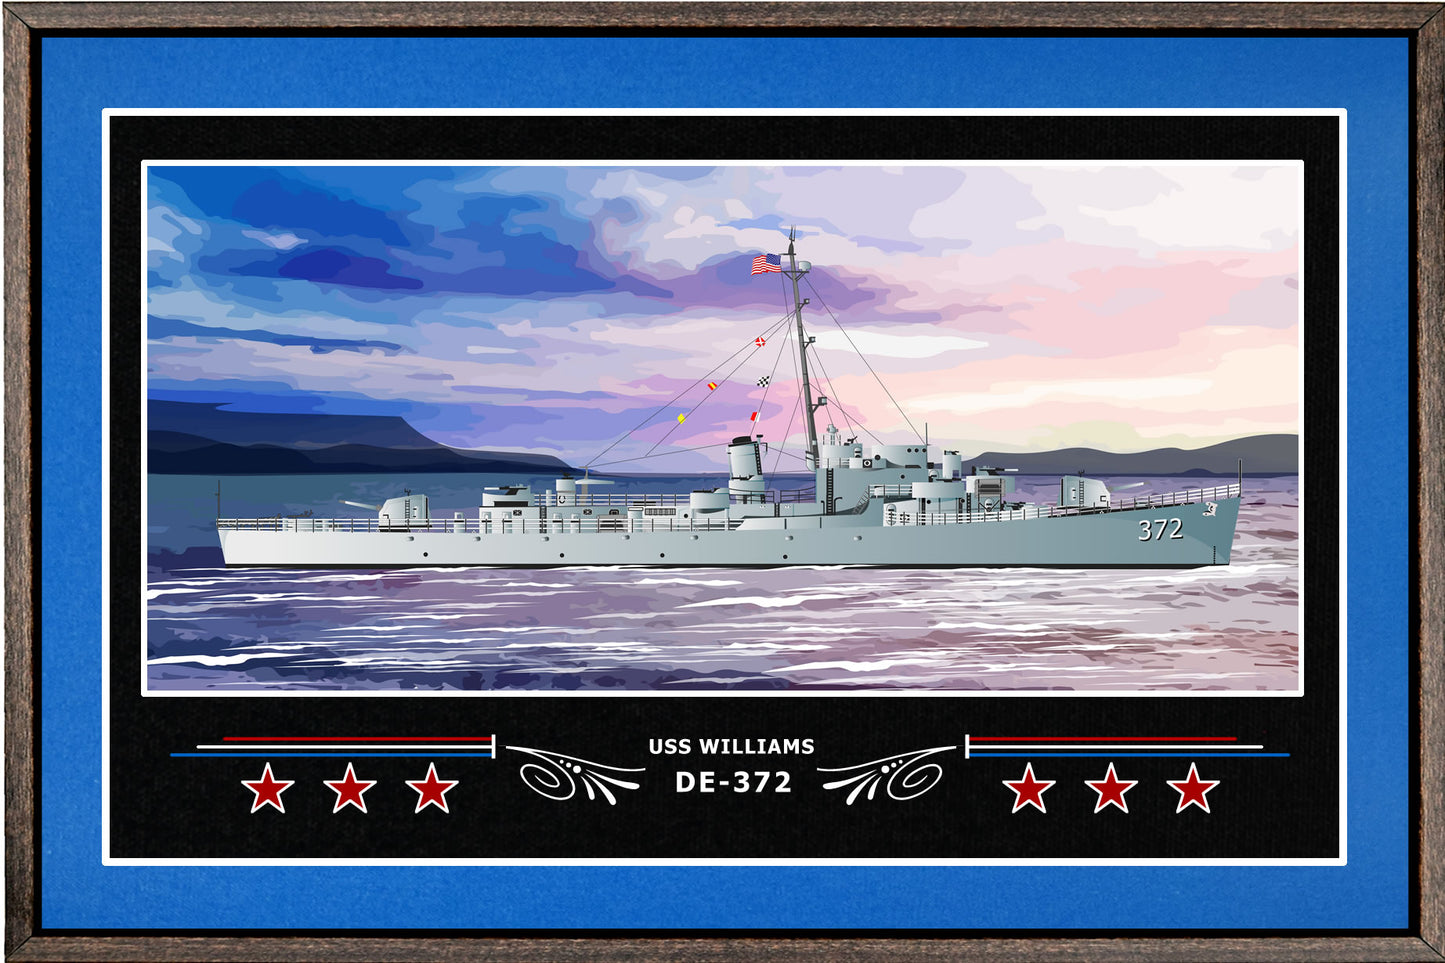 USS WILLIAMS DE 372 BOX FRAMED CANVAS ART BLUE